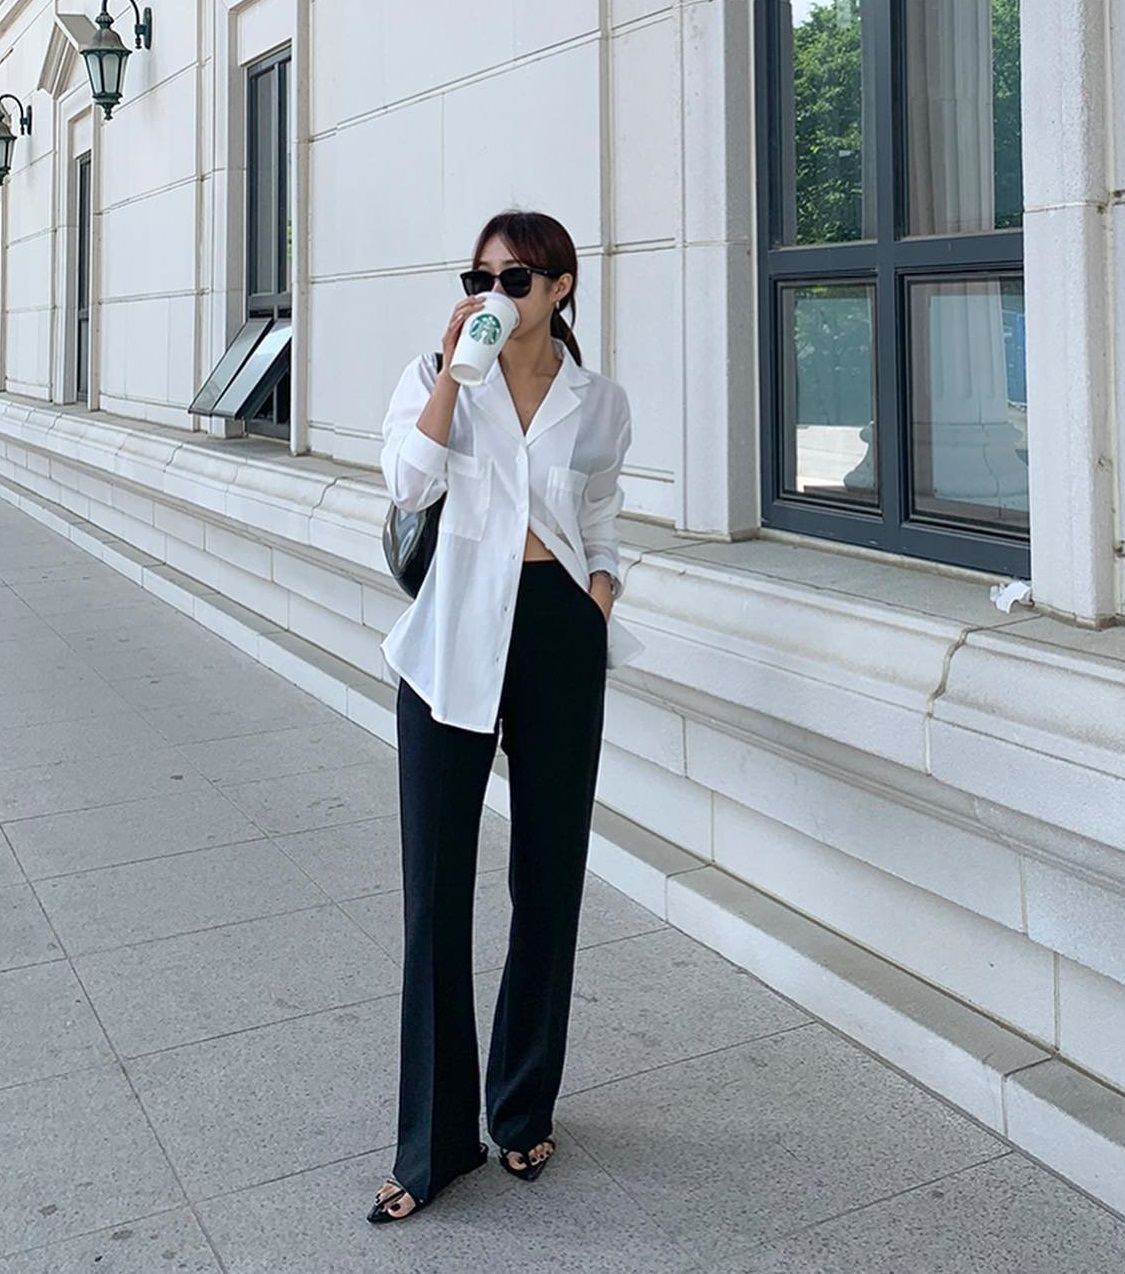 10 cách phối áo trắng với quần đen giúp bạn mặc đẹp trong tích tắc - Ảnh 1.